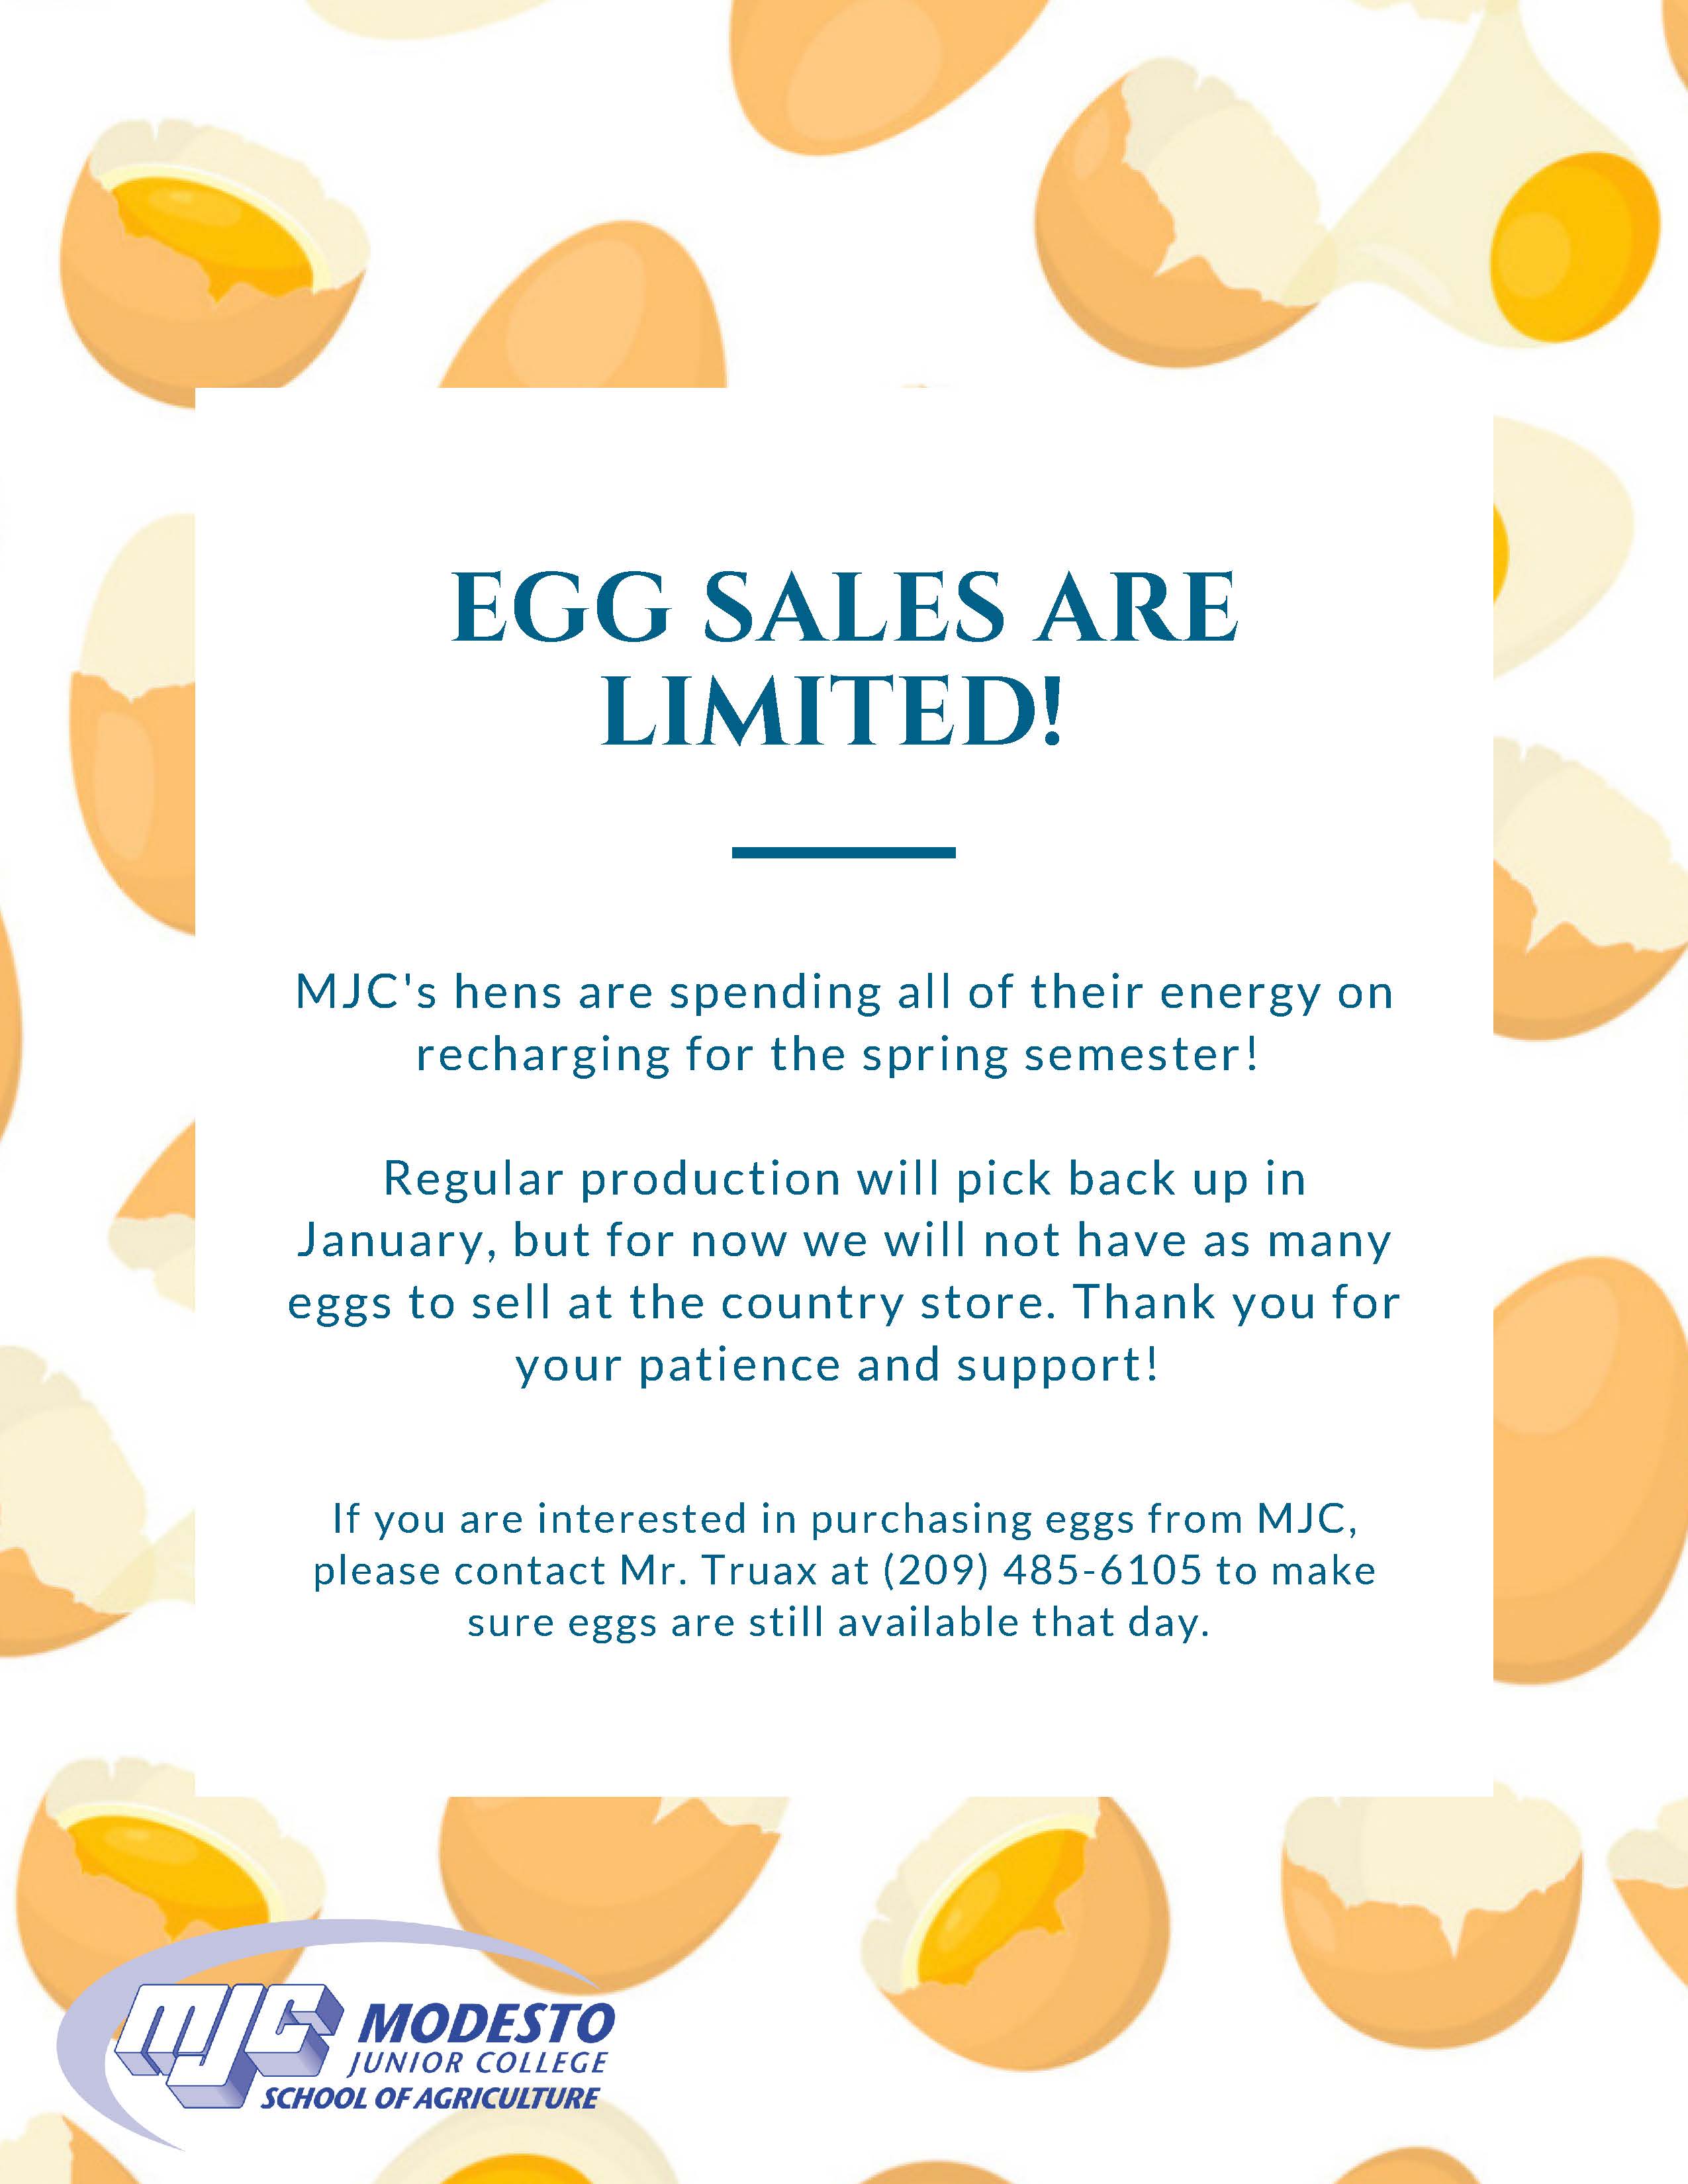 Egg Sales Limited